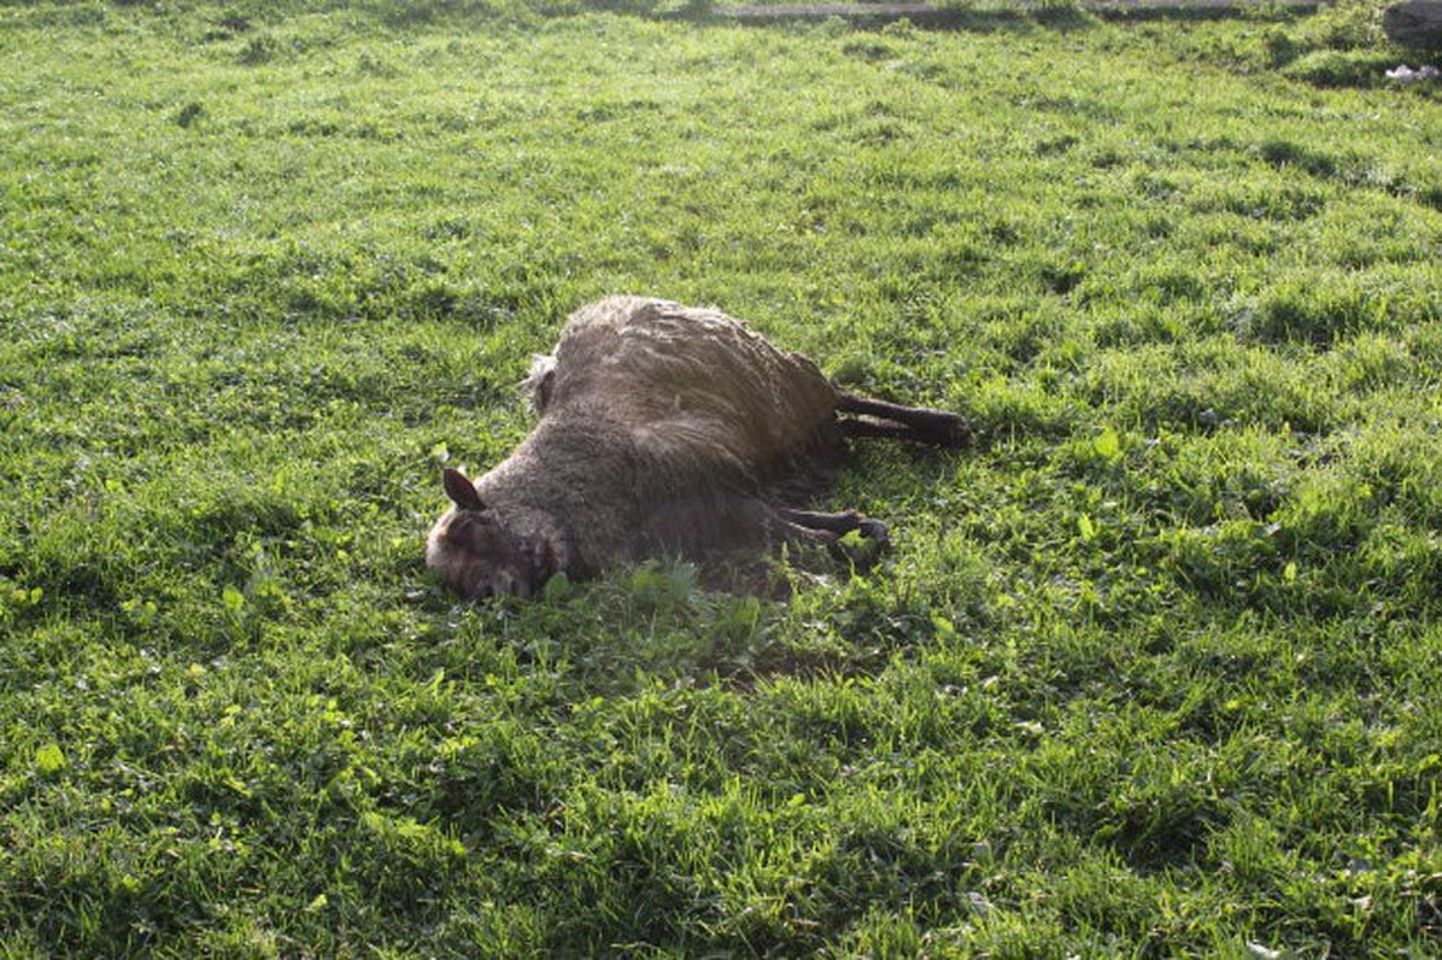 Selle lamba murdsid hundid maha möödunud nädalavahetusel Paide linna piiri läheduses.